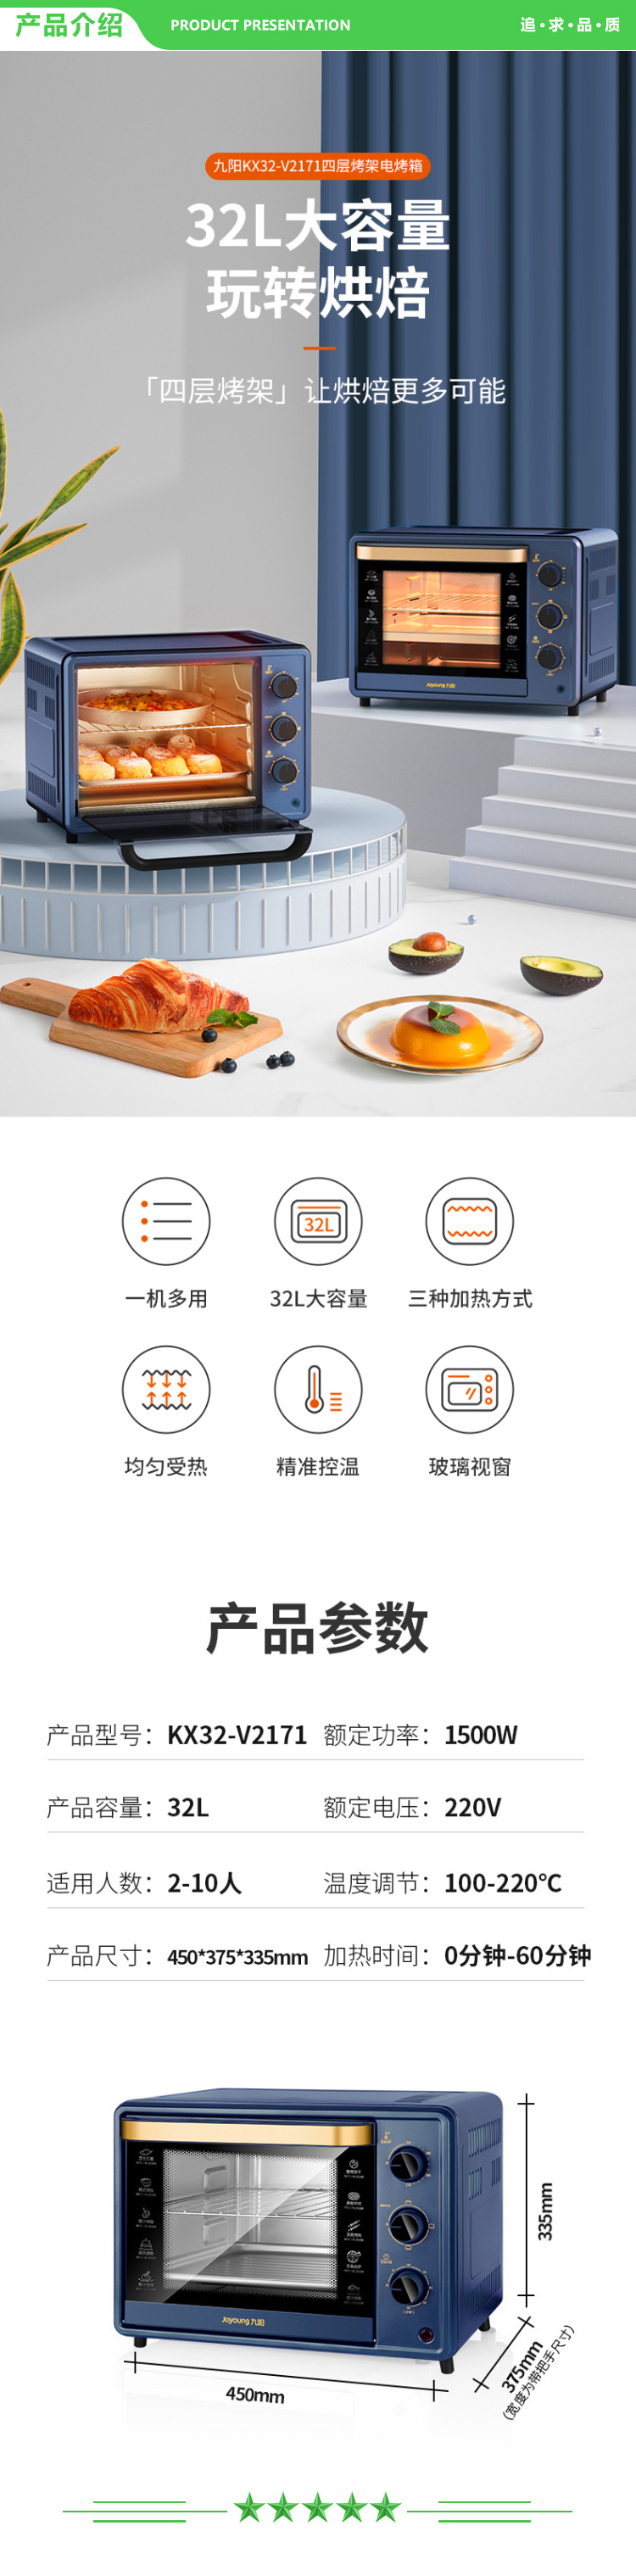 九阳 Joyoung KX32-V2171 电烤箱 家用多功能32L大容量烘焙精准定时控温烘烤面包.jpg